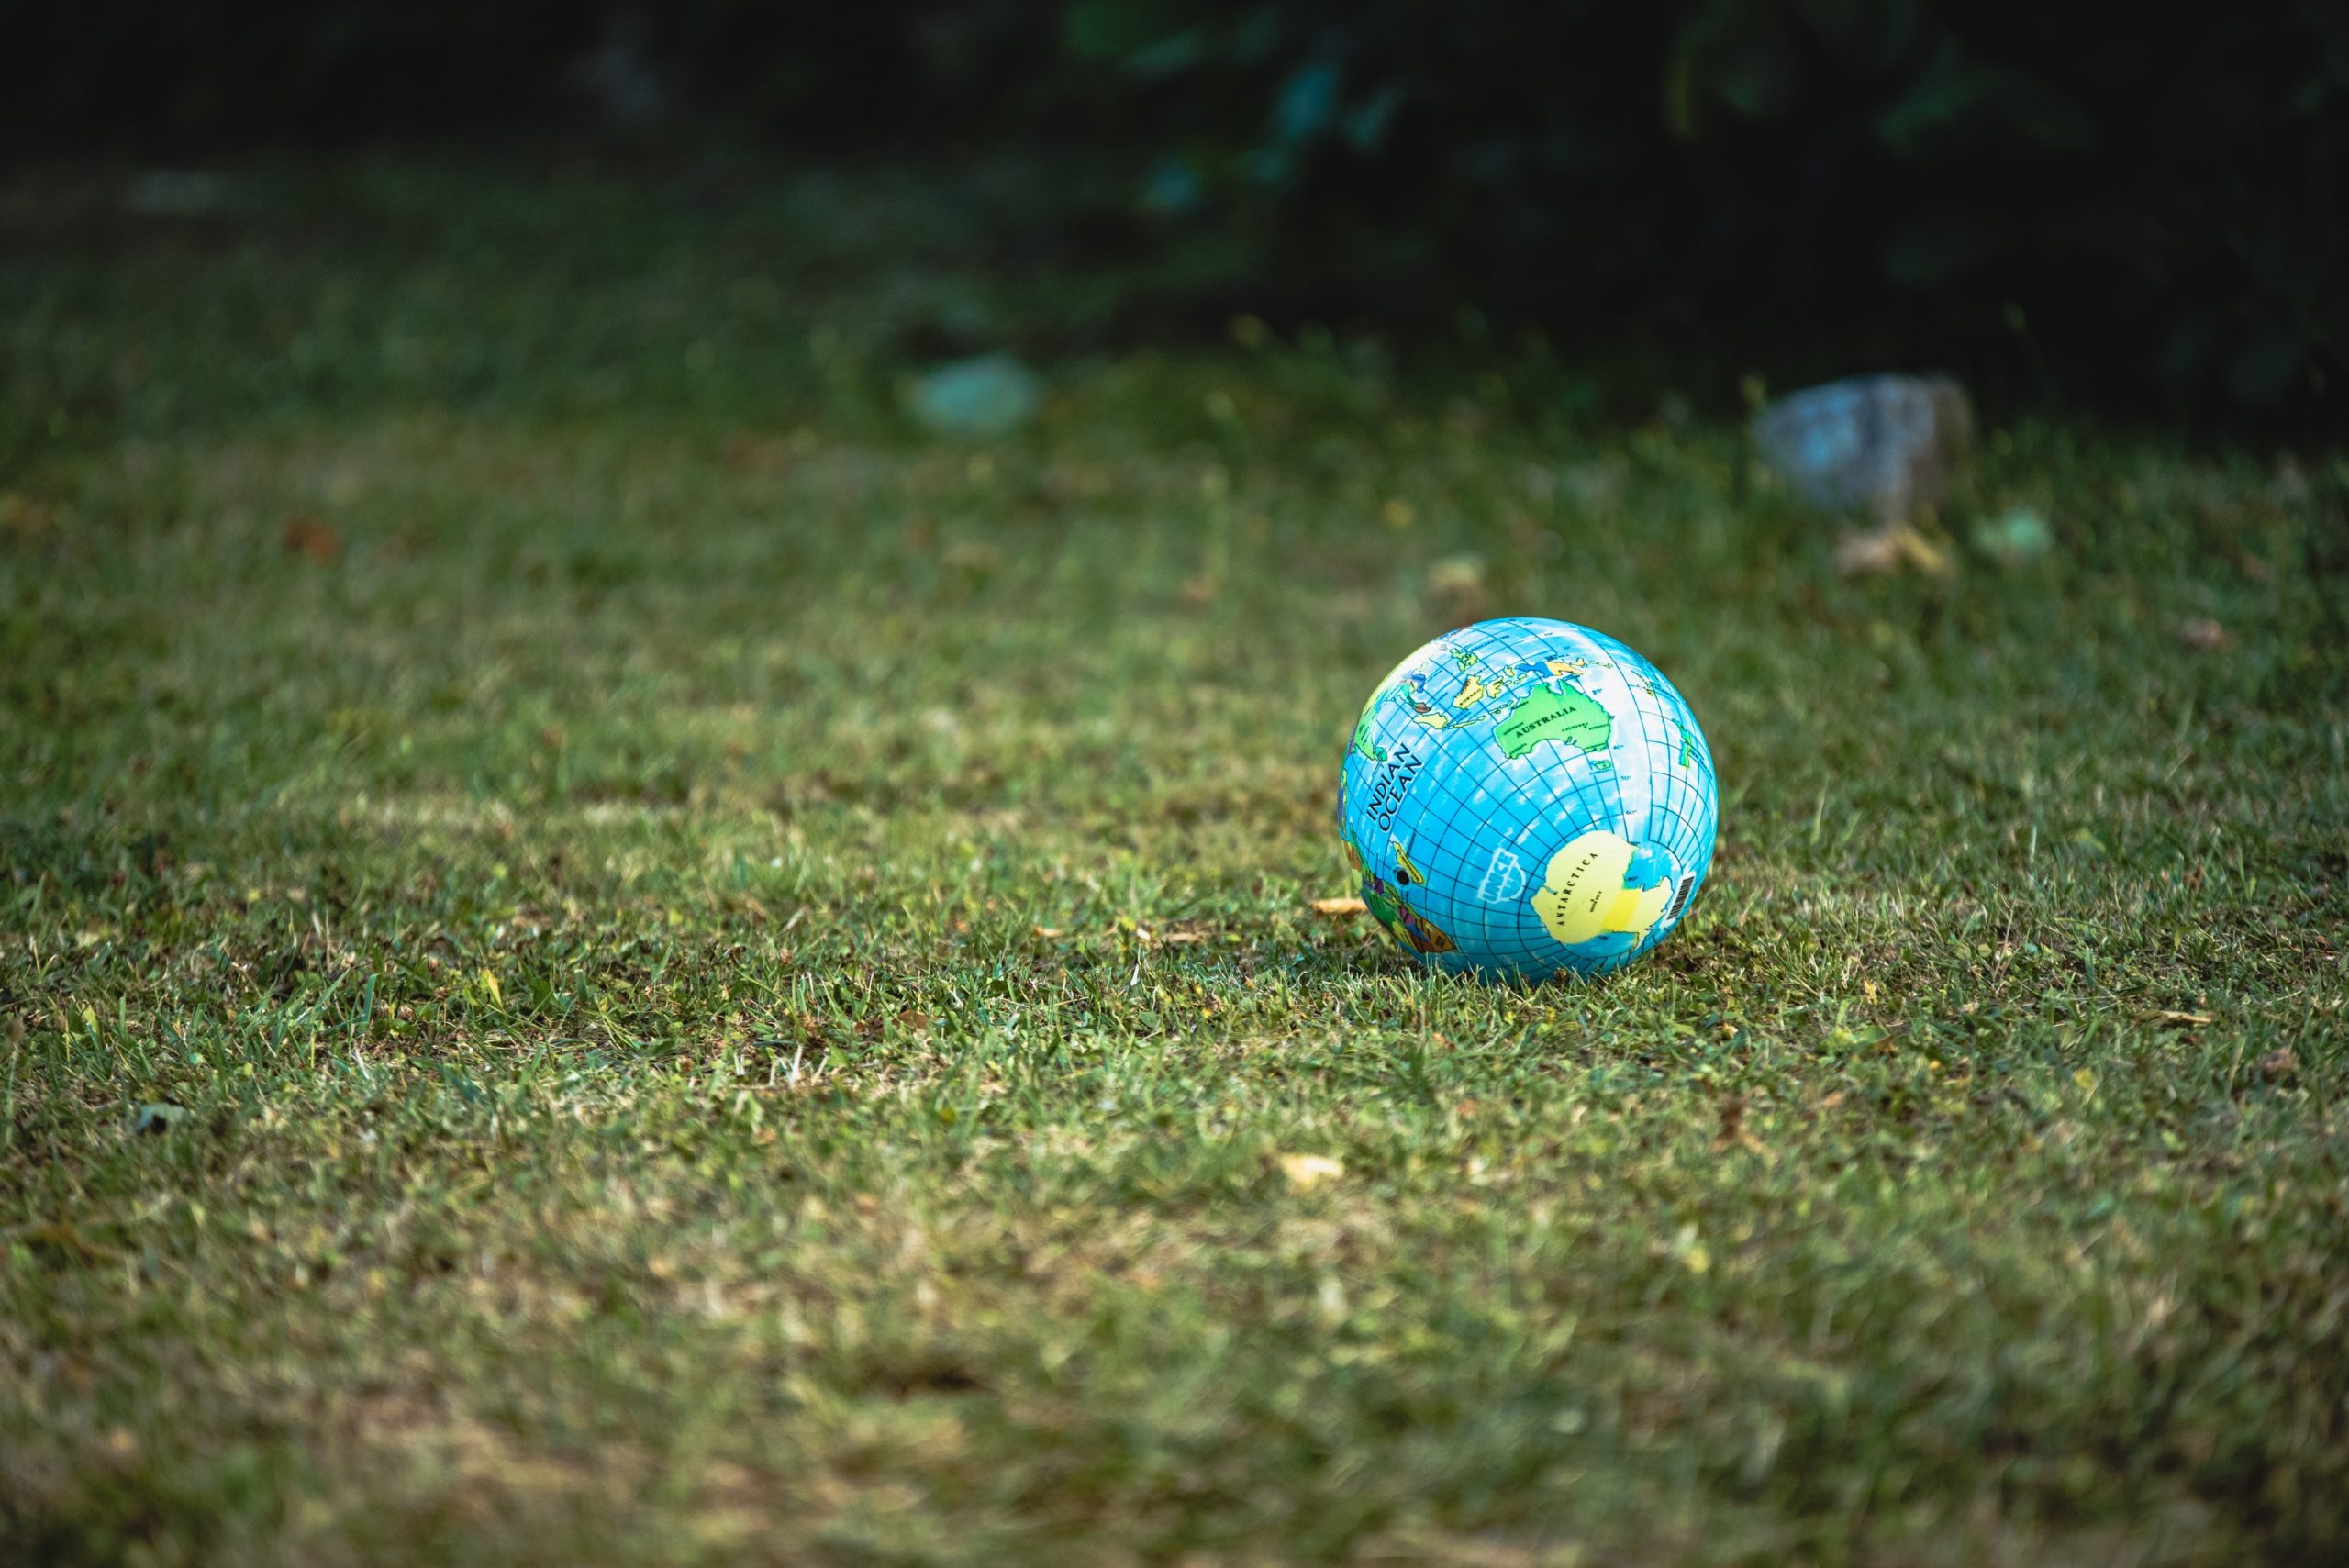 Das Foto zeigt eine kleine Weltkugel, die auf einer grünen Rasenfläche liegt. Sie symbolisiert einen grünen Alltag für mehr Umweltschutz im täglichen Leben.